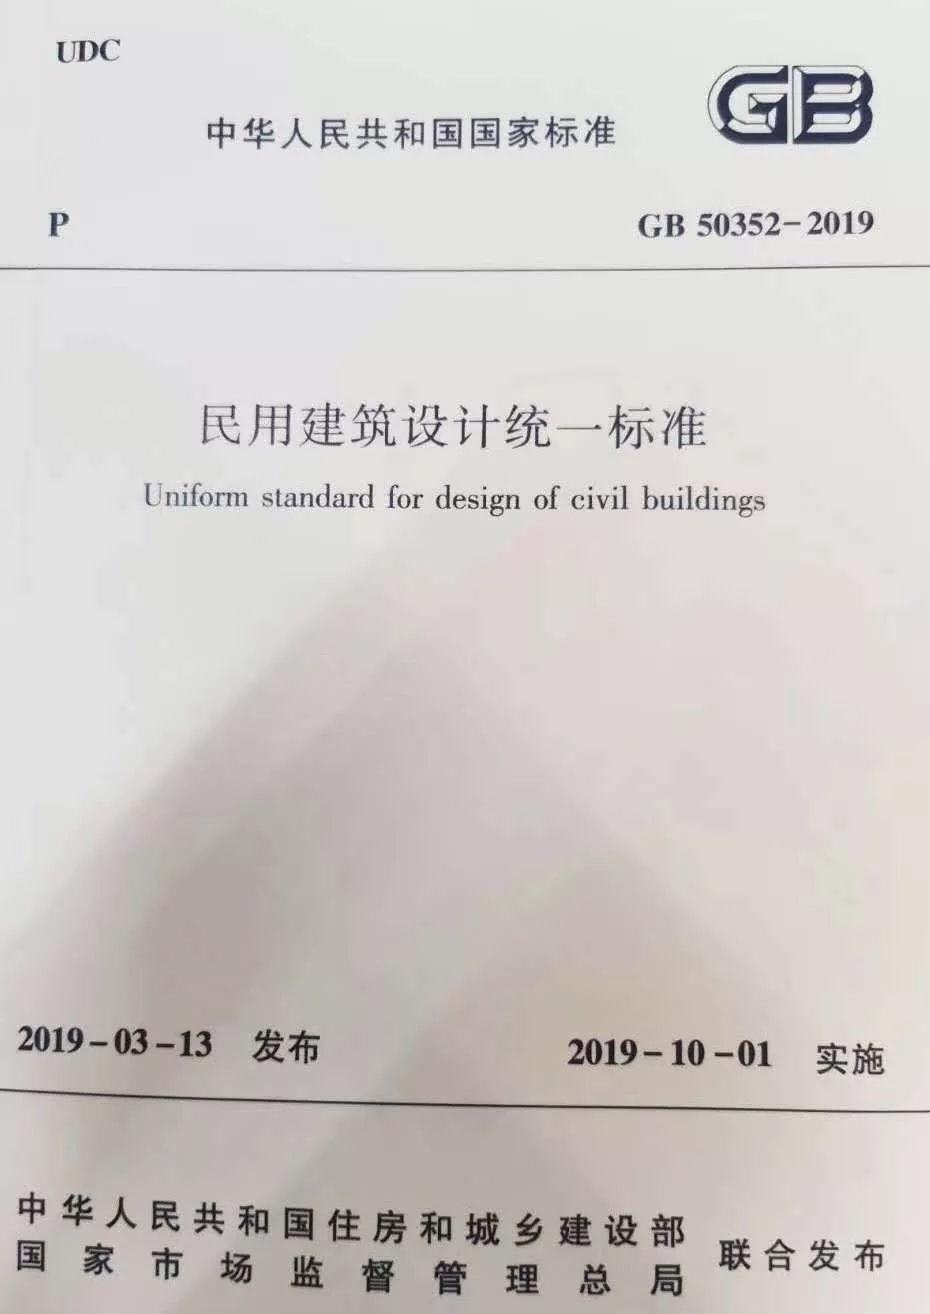 YDD·标准|国家标准《民用建筑设计统一标准》自2019年10月1日起实施